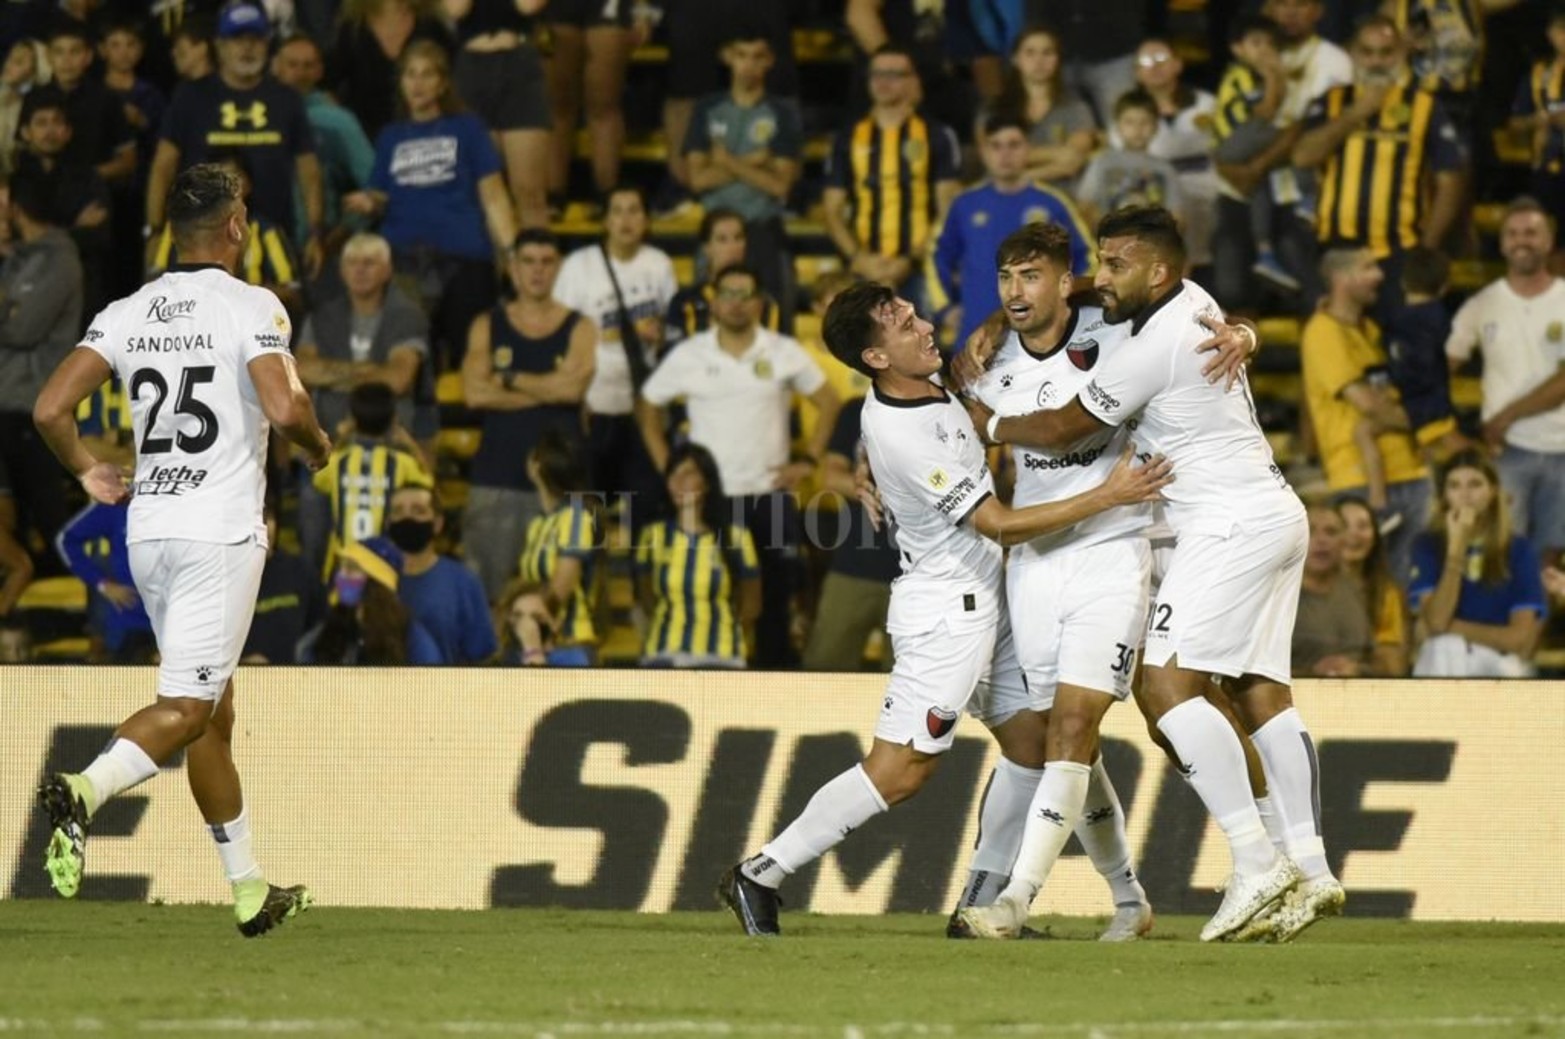 Central y Colón empataron 2 a 2 en Rosario en la fecha 9 de 13 de la Liga Profesional de Fútbol.